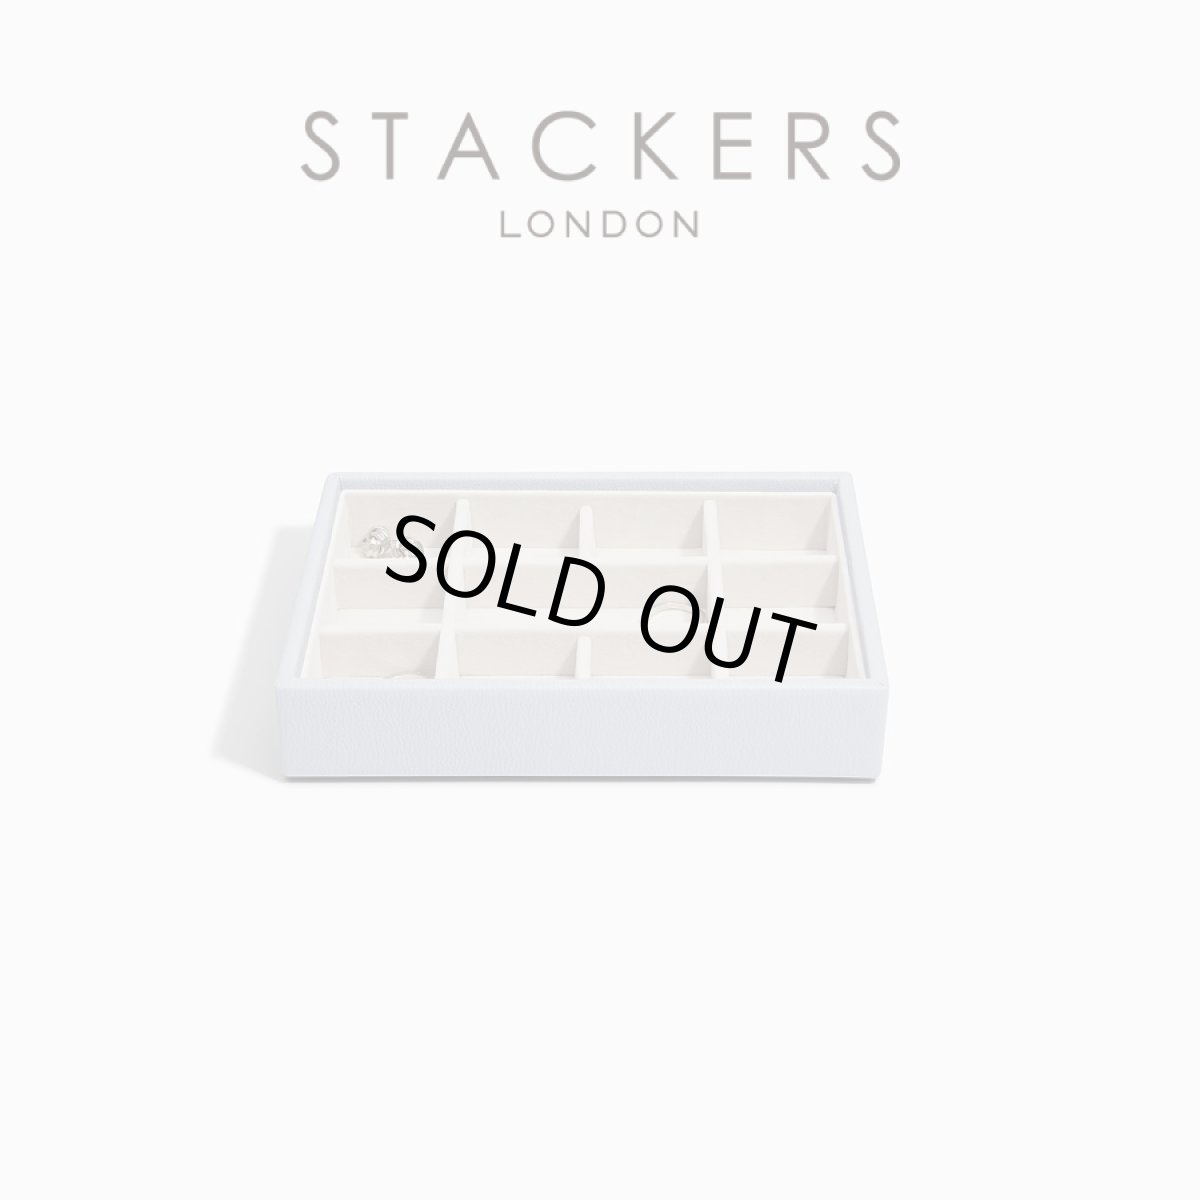 画像1: 【STACKERS】ミニ ジュエリーボックス 11sec 11個仕切り ラベンダー Lavender スタッカーズ イギリス ロンドン (1)